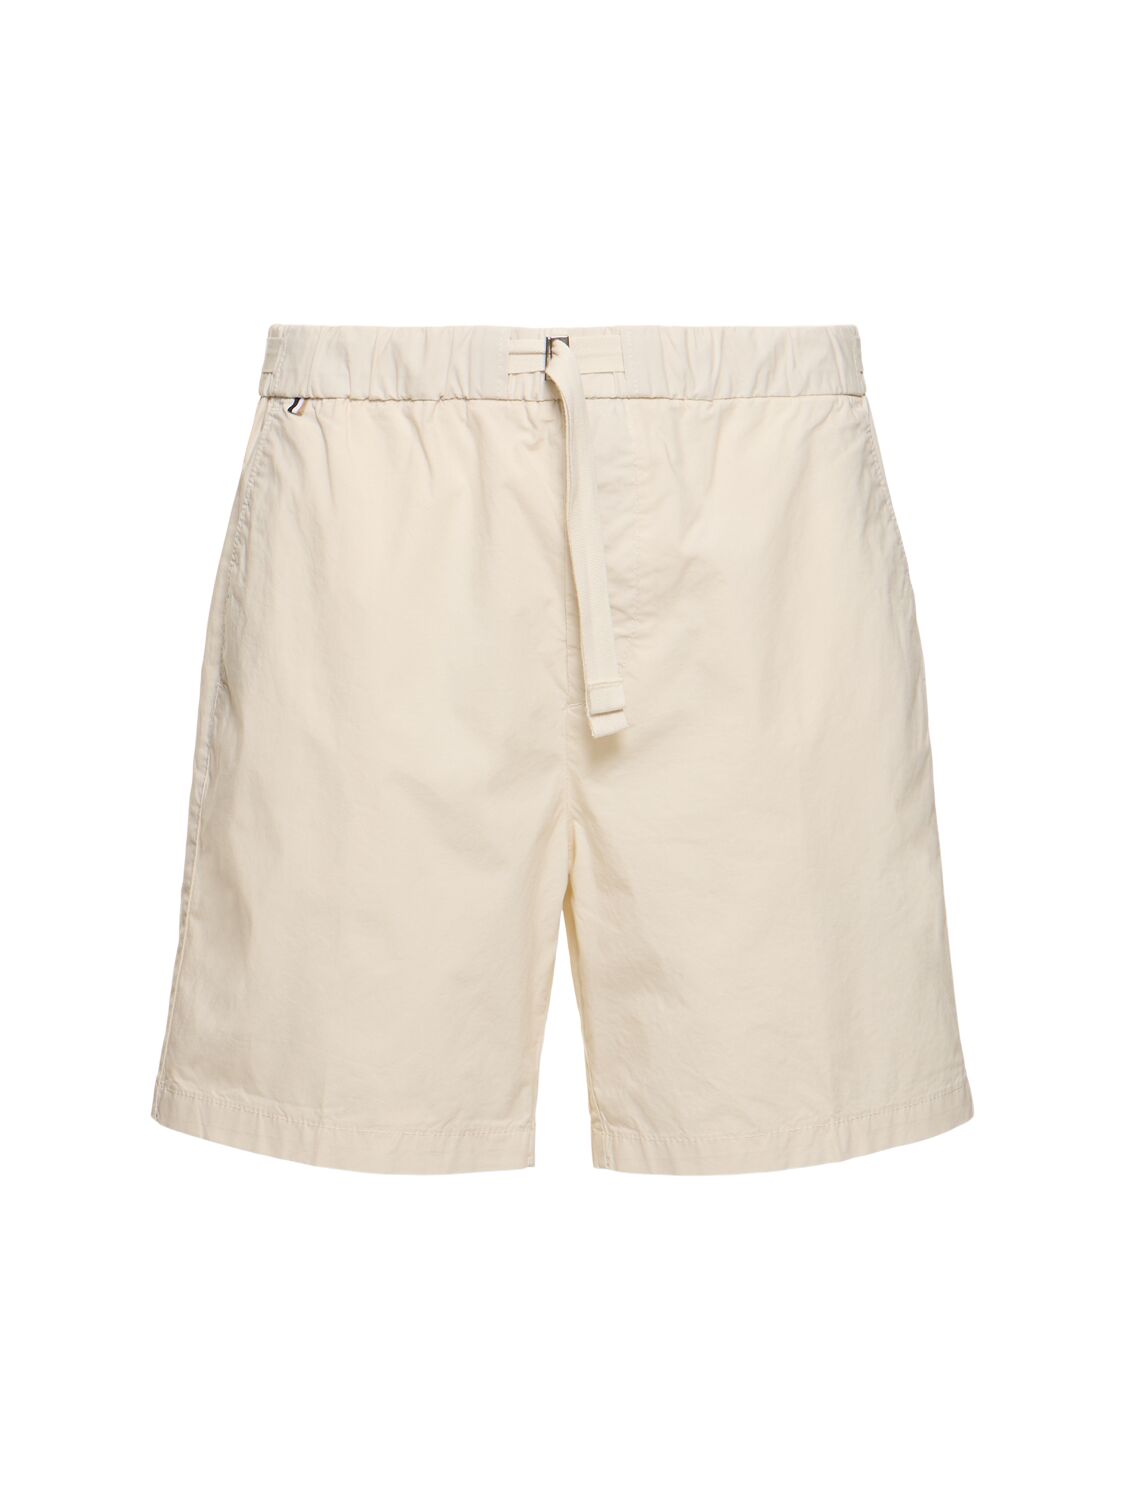 Hugo Boss Kenosh Cotton Blend Shorts In Open White